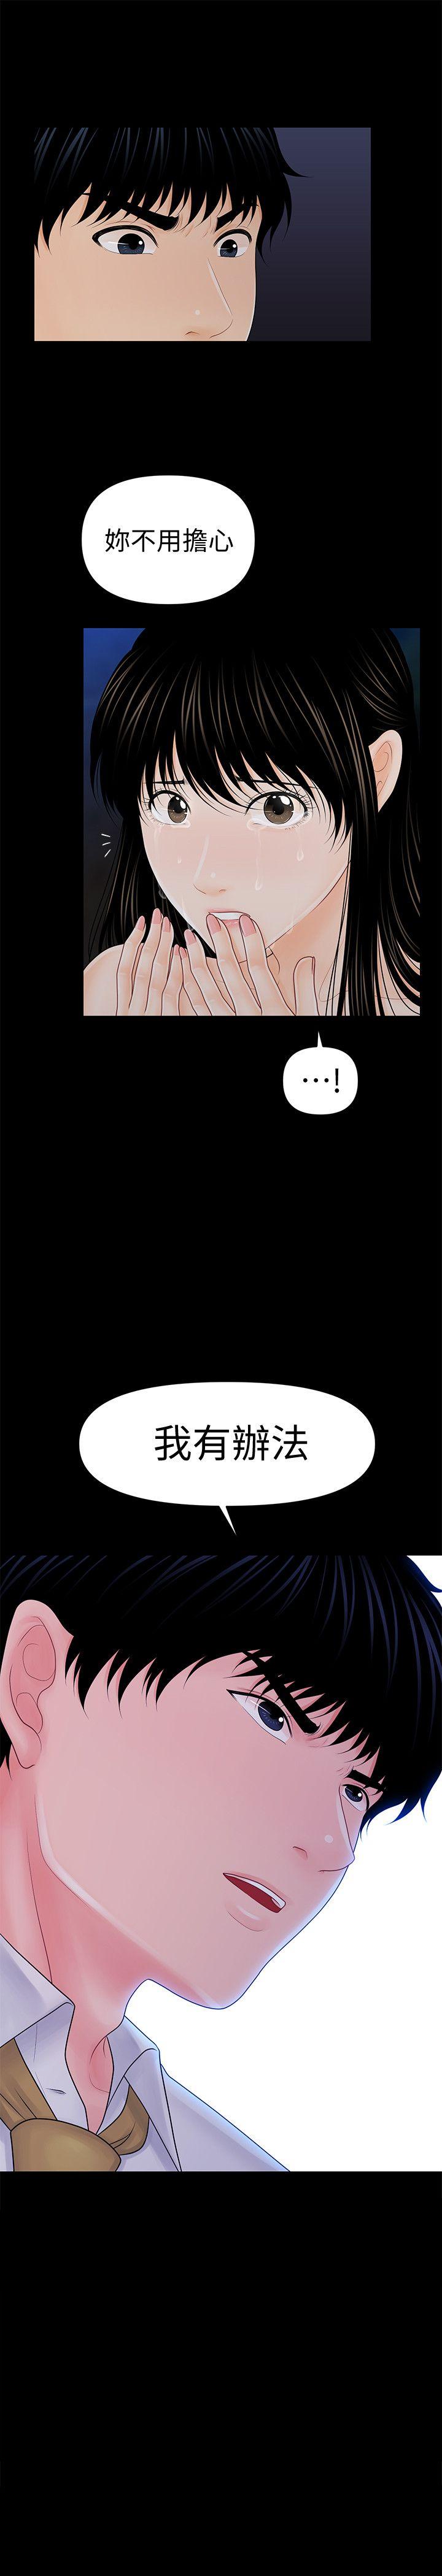 《秘书的潜规则》漫画 第36话-胜哲所选择的女人是…?